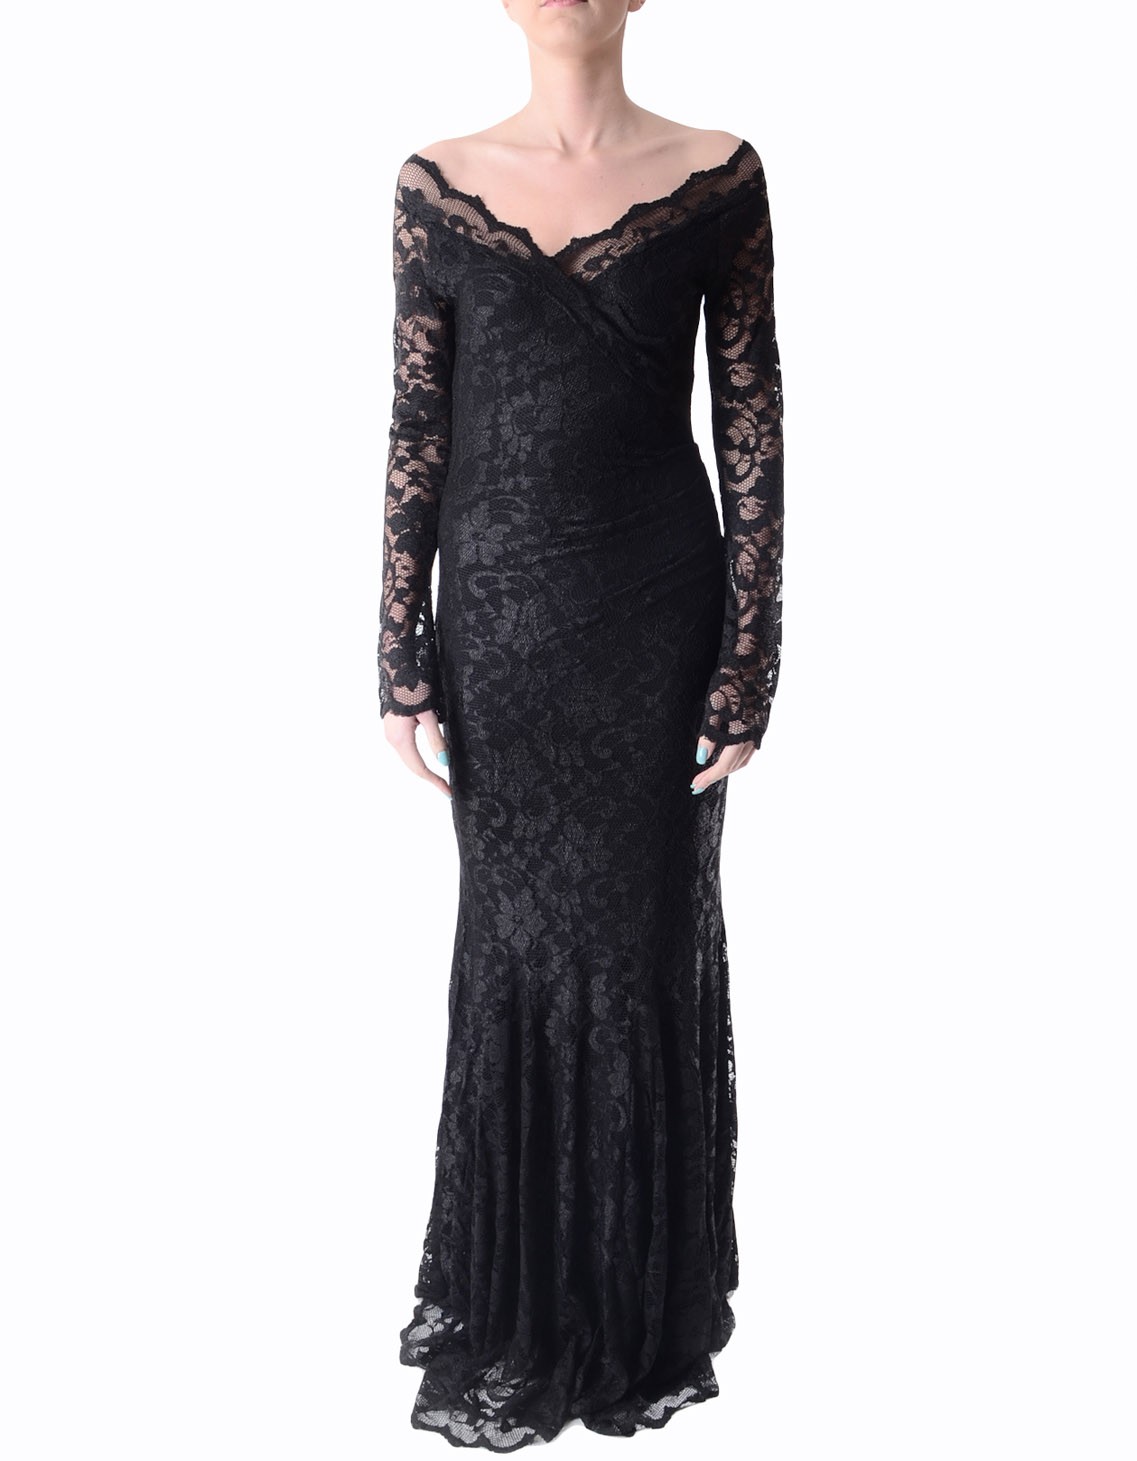 Black Lace Dress Picture Collection | DressedUpGirl.com